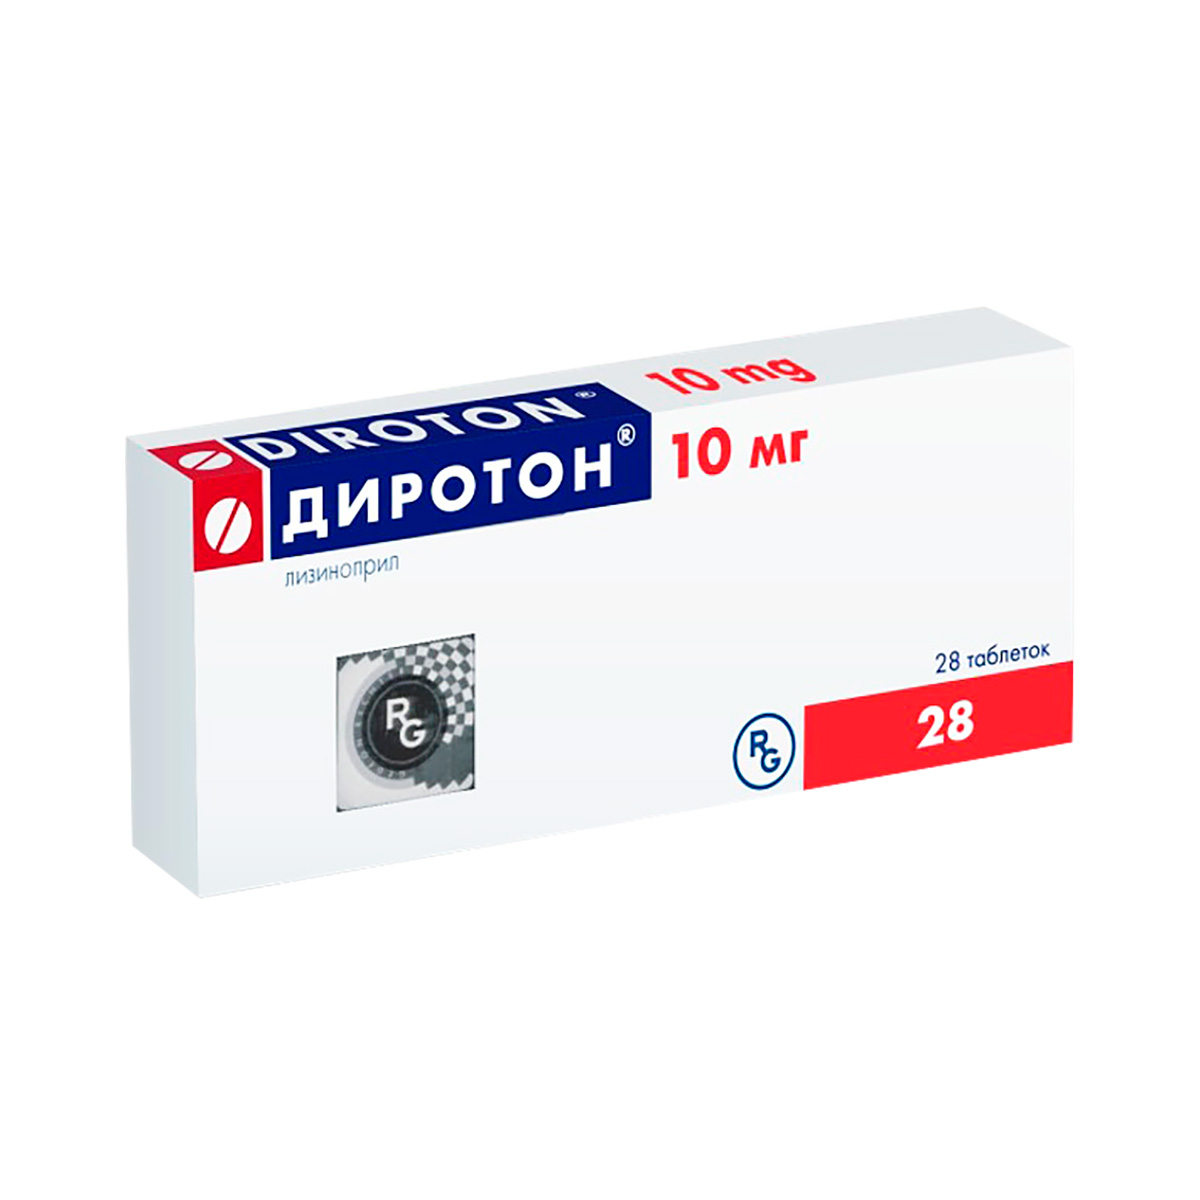 Диротон 10 мг таблетки 28 шт